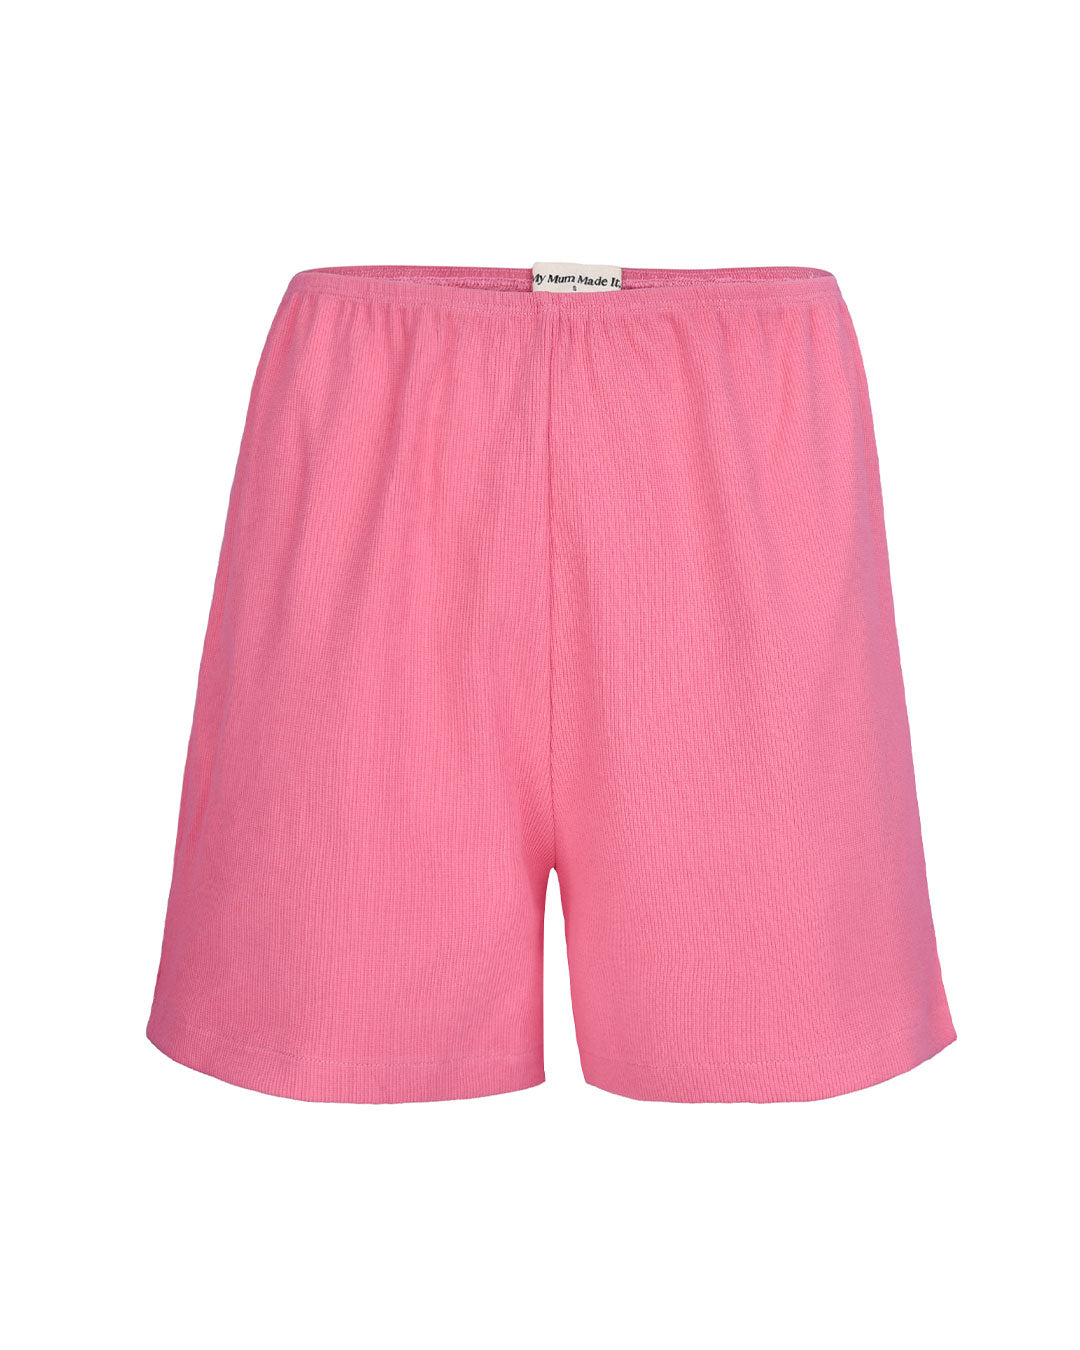 Thick Rib Shorts - Hot Pink